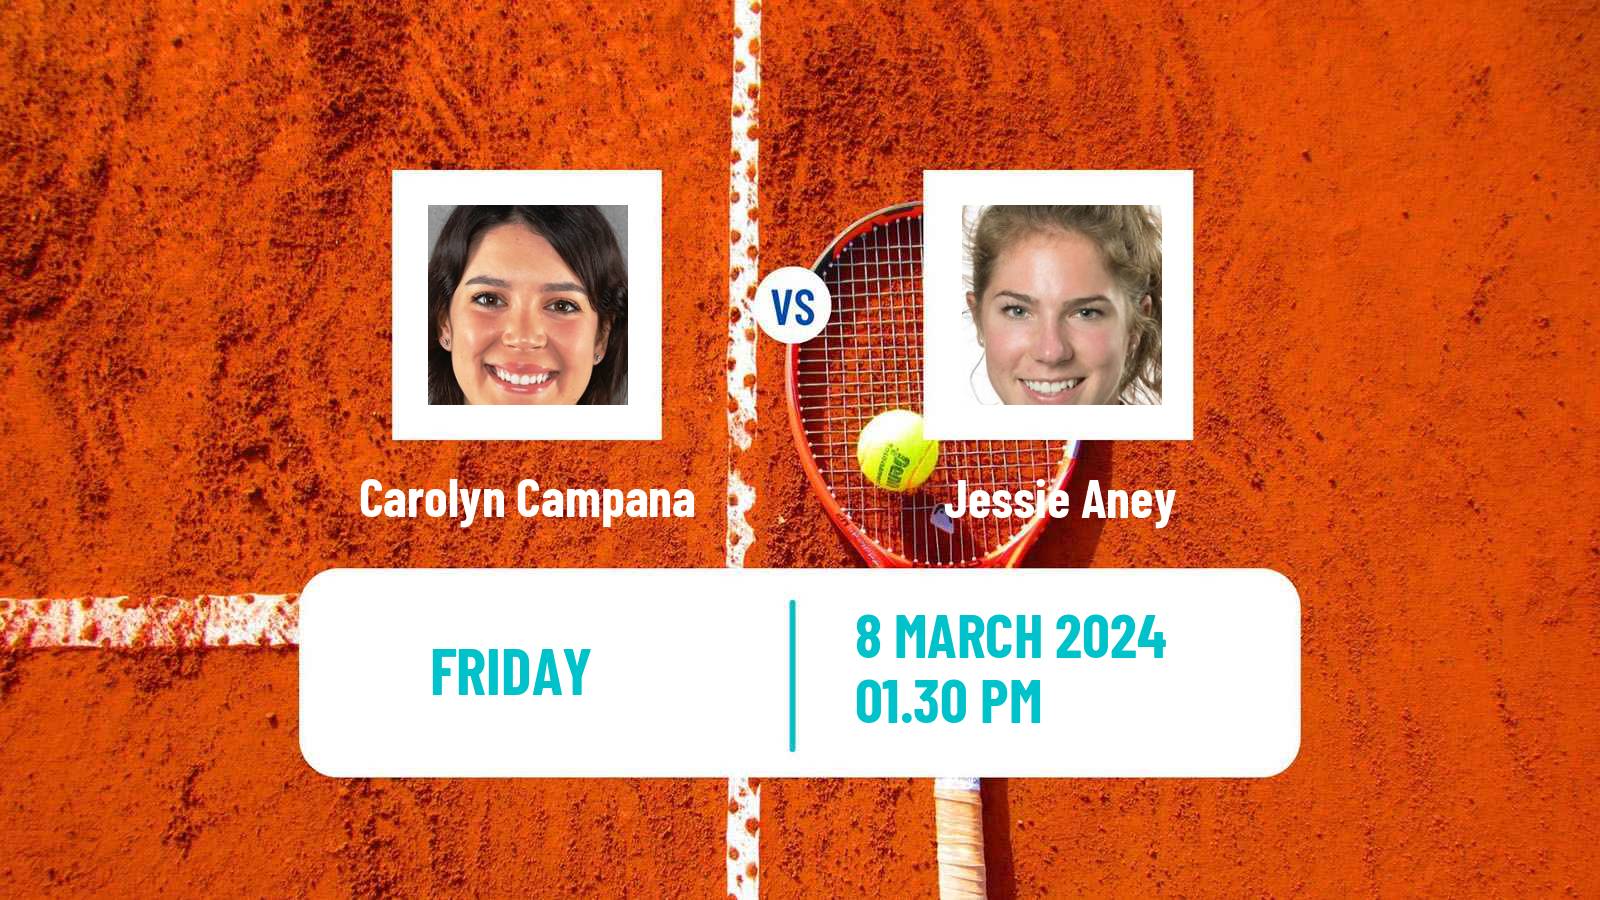 Tennis ITF W15 Brossard Women Carolyn Campana - Jessie Aney